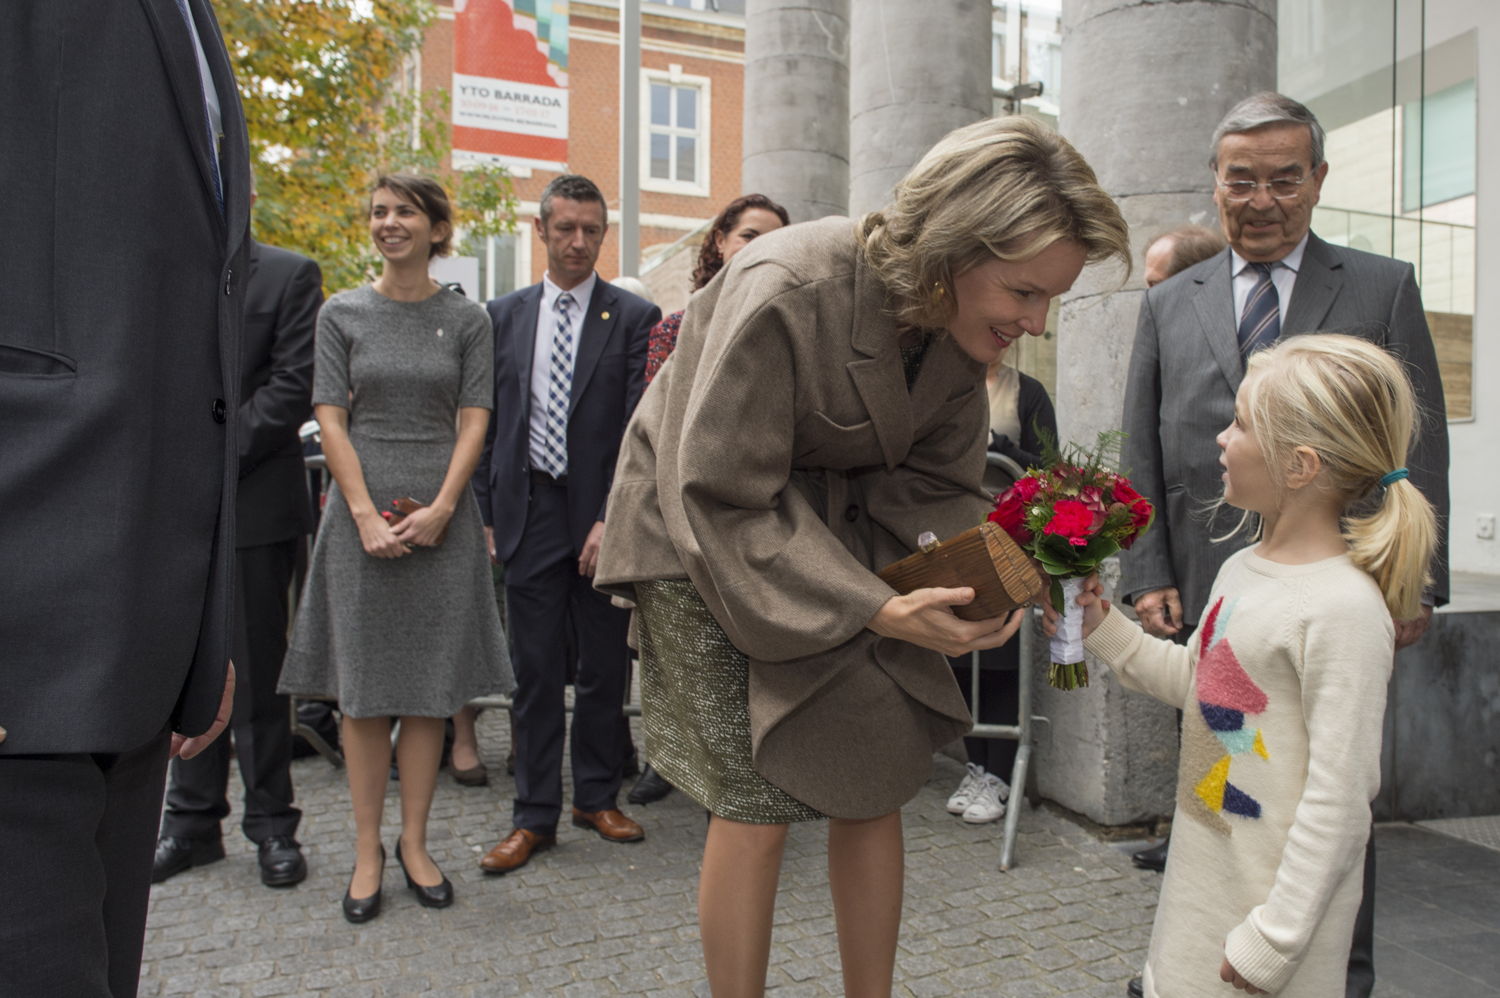 Koningin Mathilde neemt bloemen in ontvangst van Liv (4,5 jaar)
(c) Rudi Van Beek